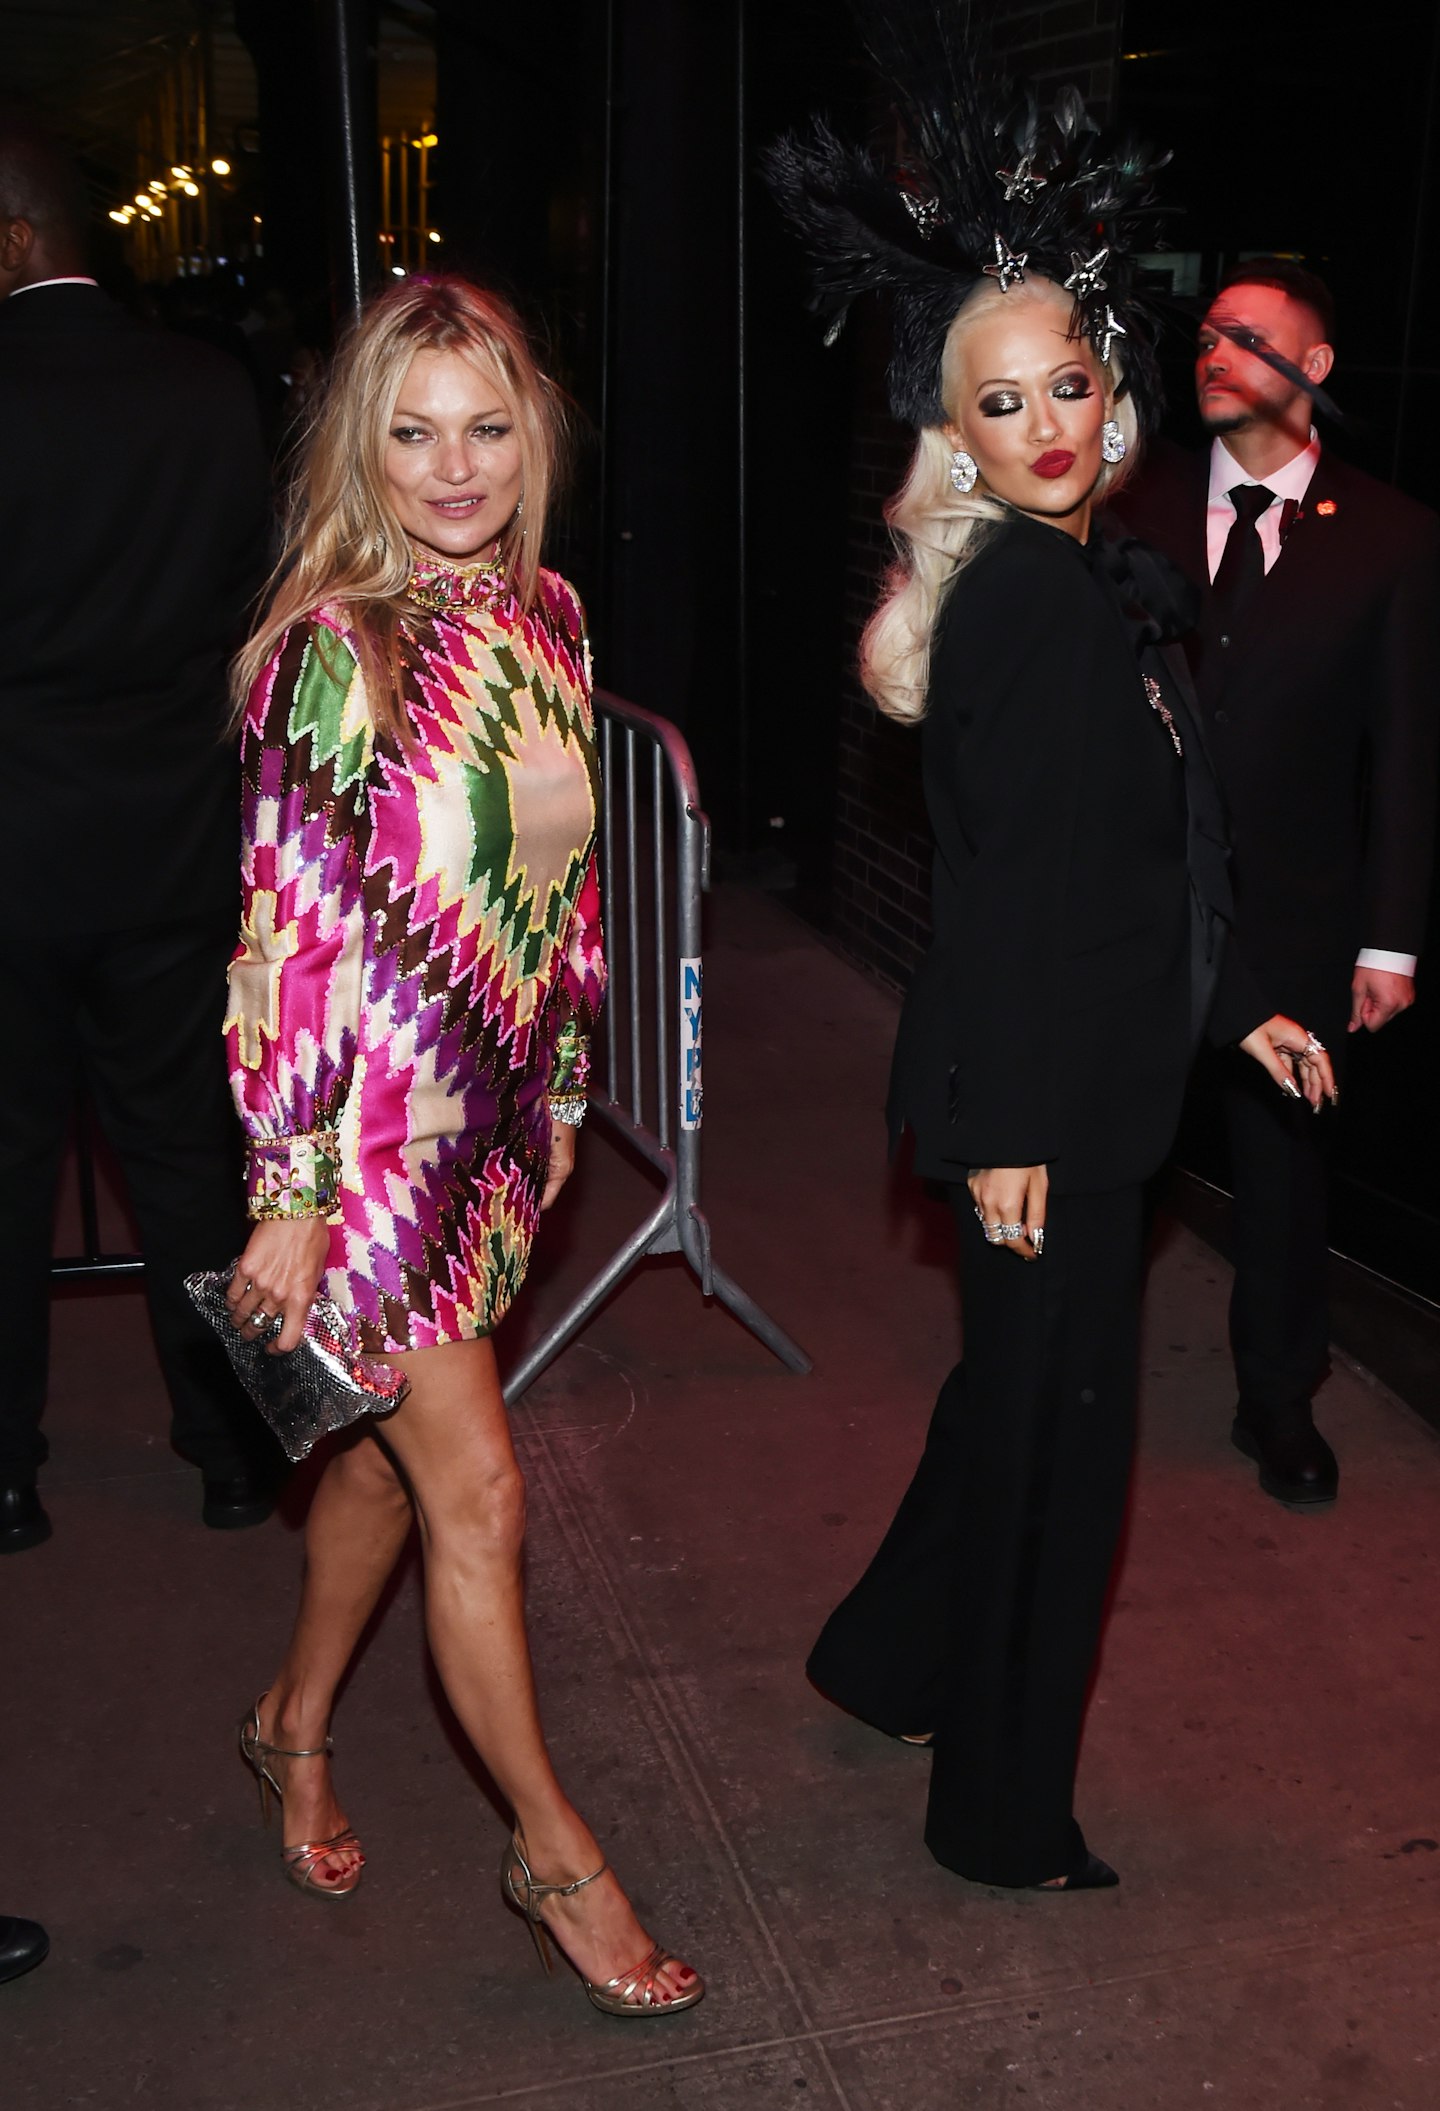 Kate Moss and Rita Ora